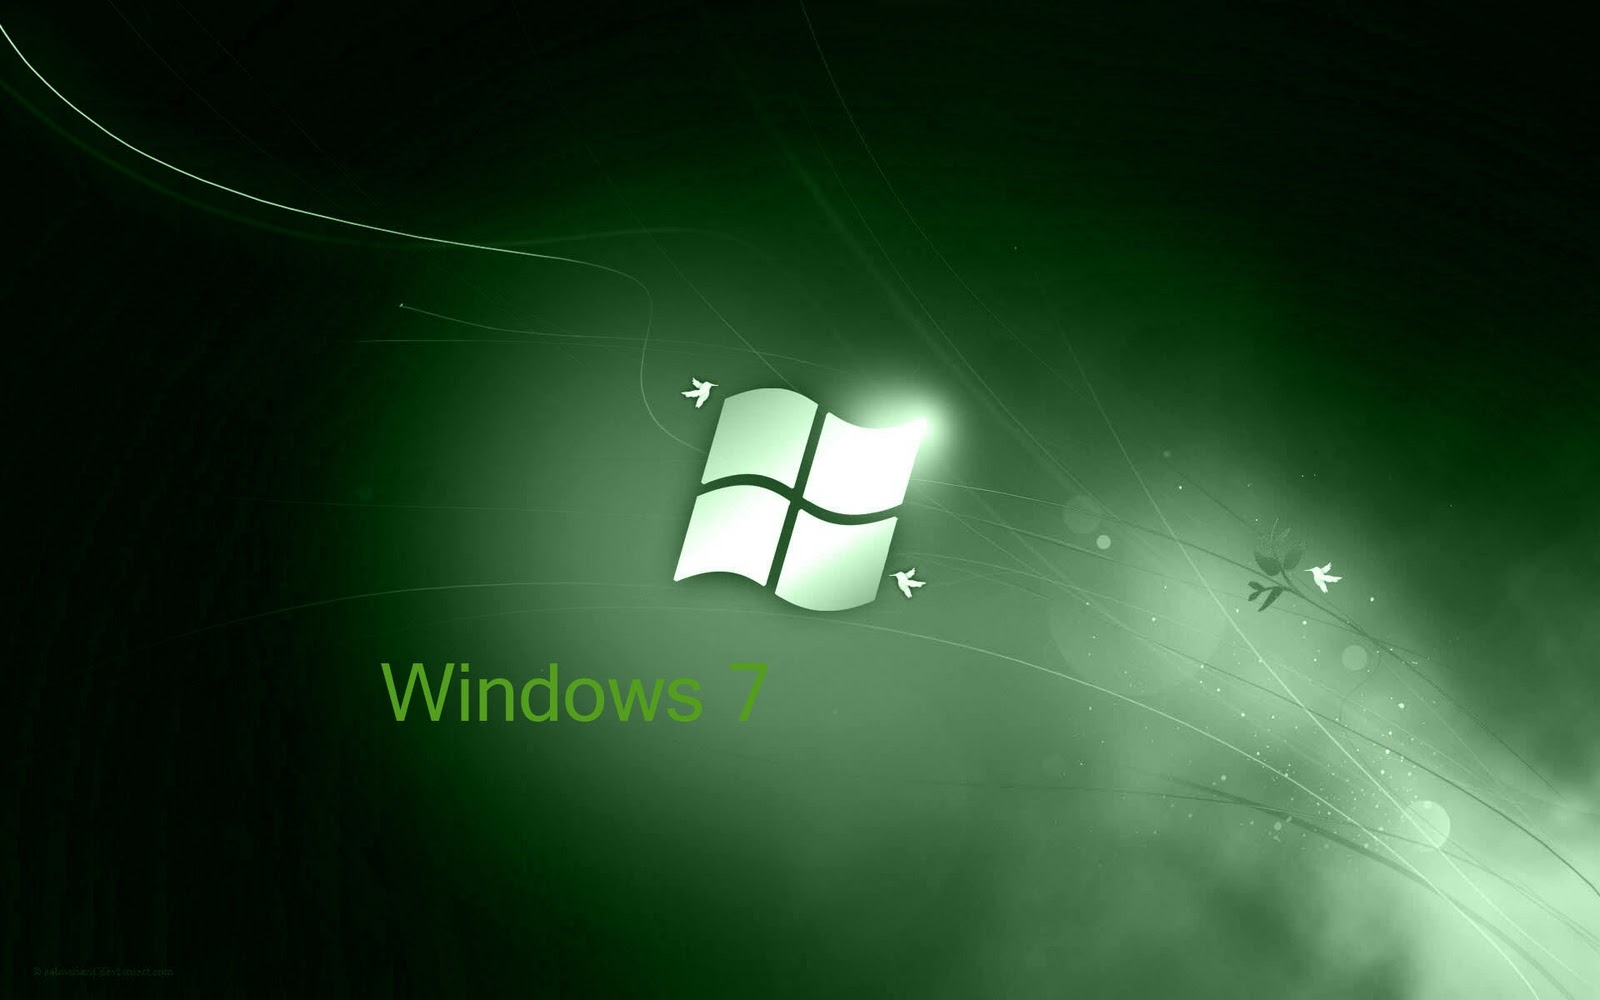 Hình nền Windows 7 màu trắng và xám là sự lựa chọn hoàn hảo cho những người yêu thích sự đơn giản và thanh lịch. Với sự kết hợp tuyệt vời giữa hai màu sắc, bạn sẽ có một nền tảng hoàn hảo để thể hiện sự chuyên nghiệp và đơn giản trong công việc của mình.